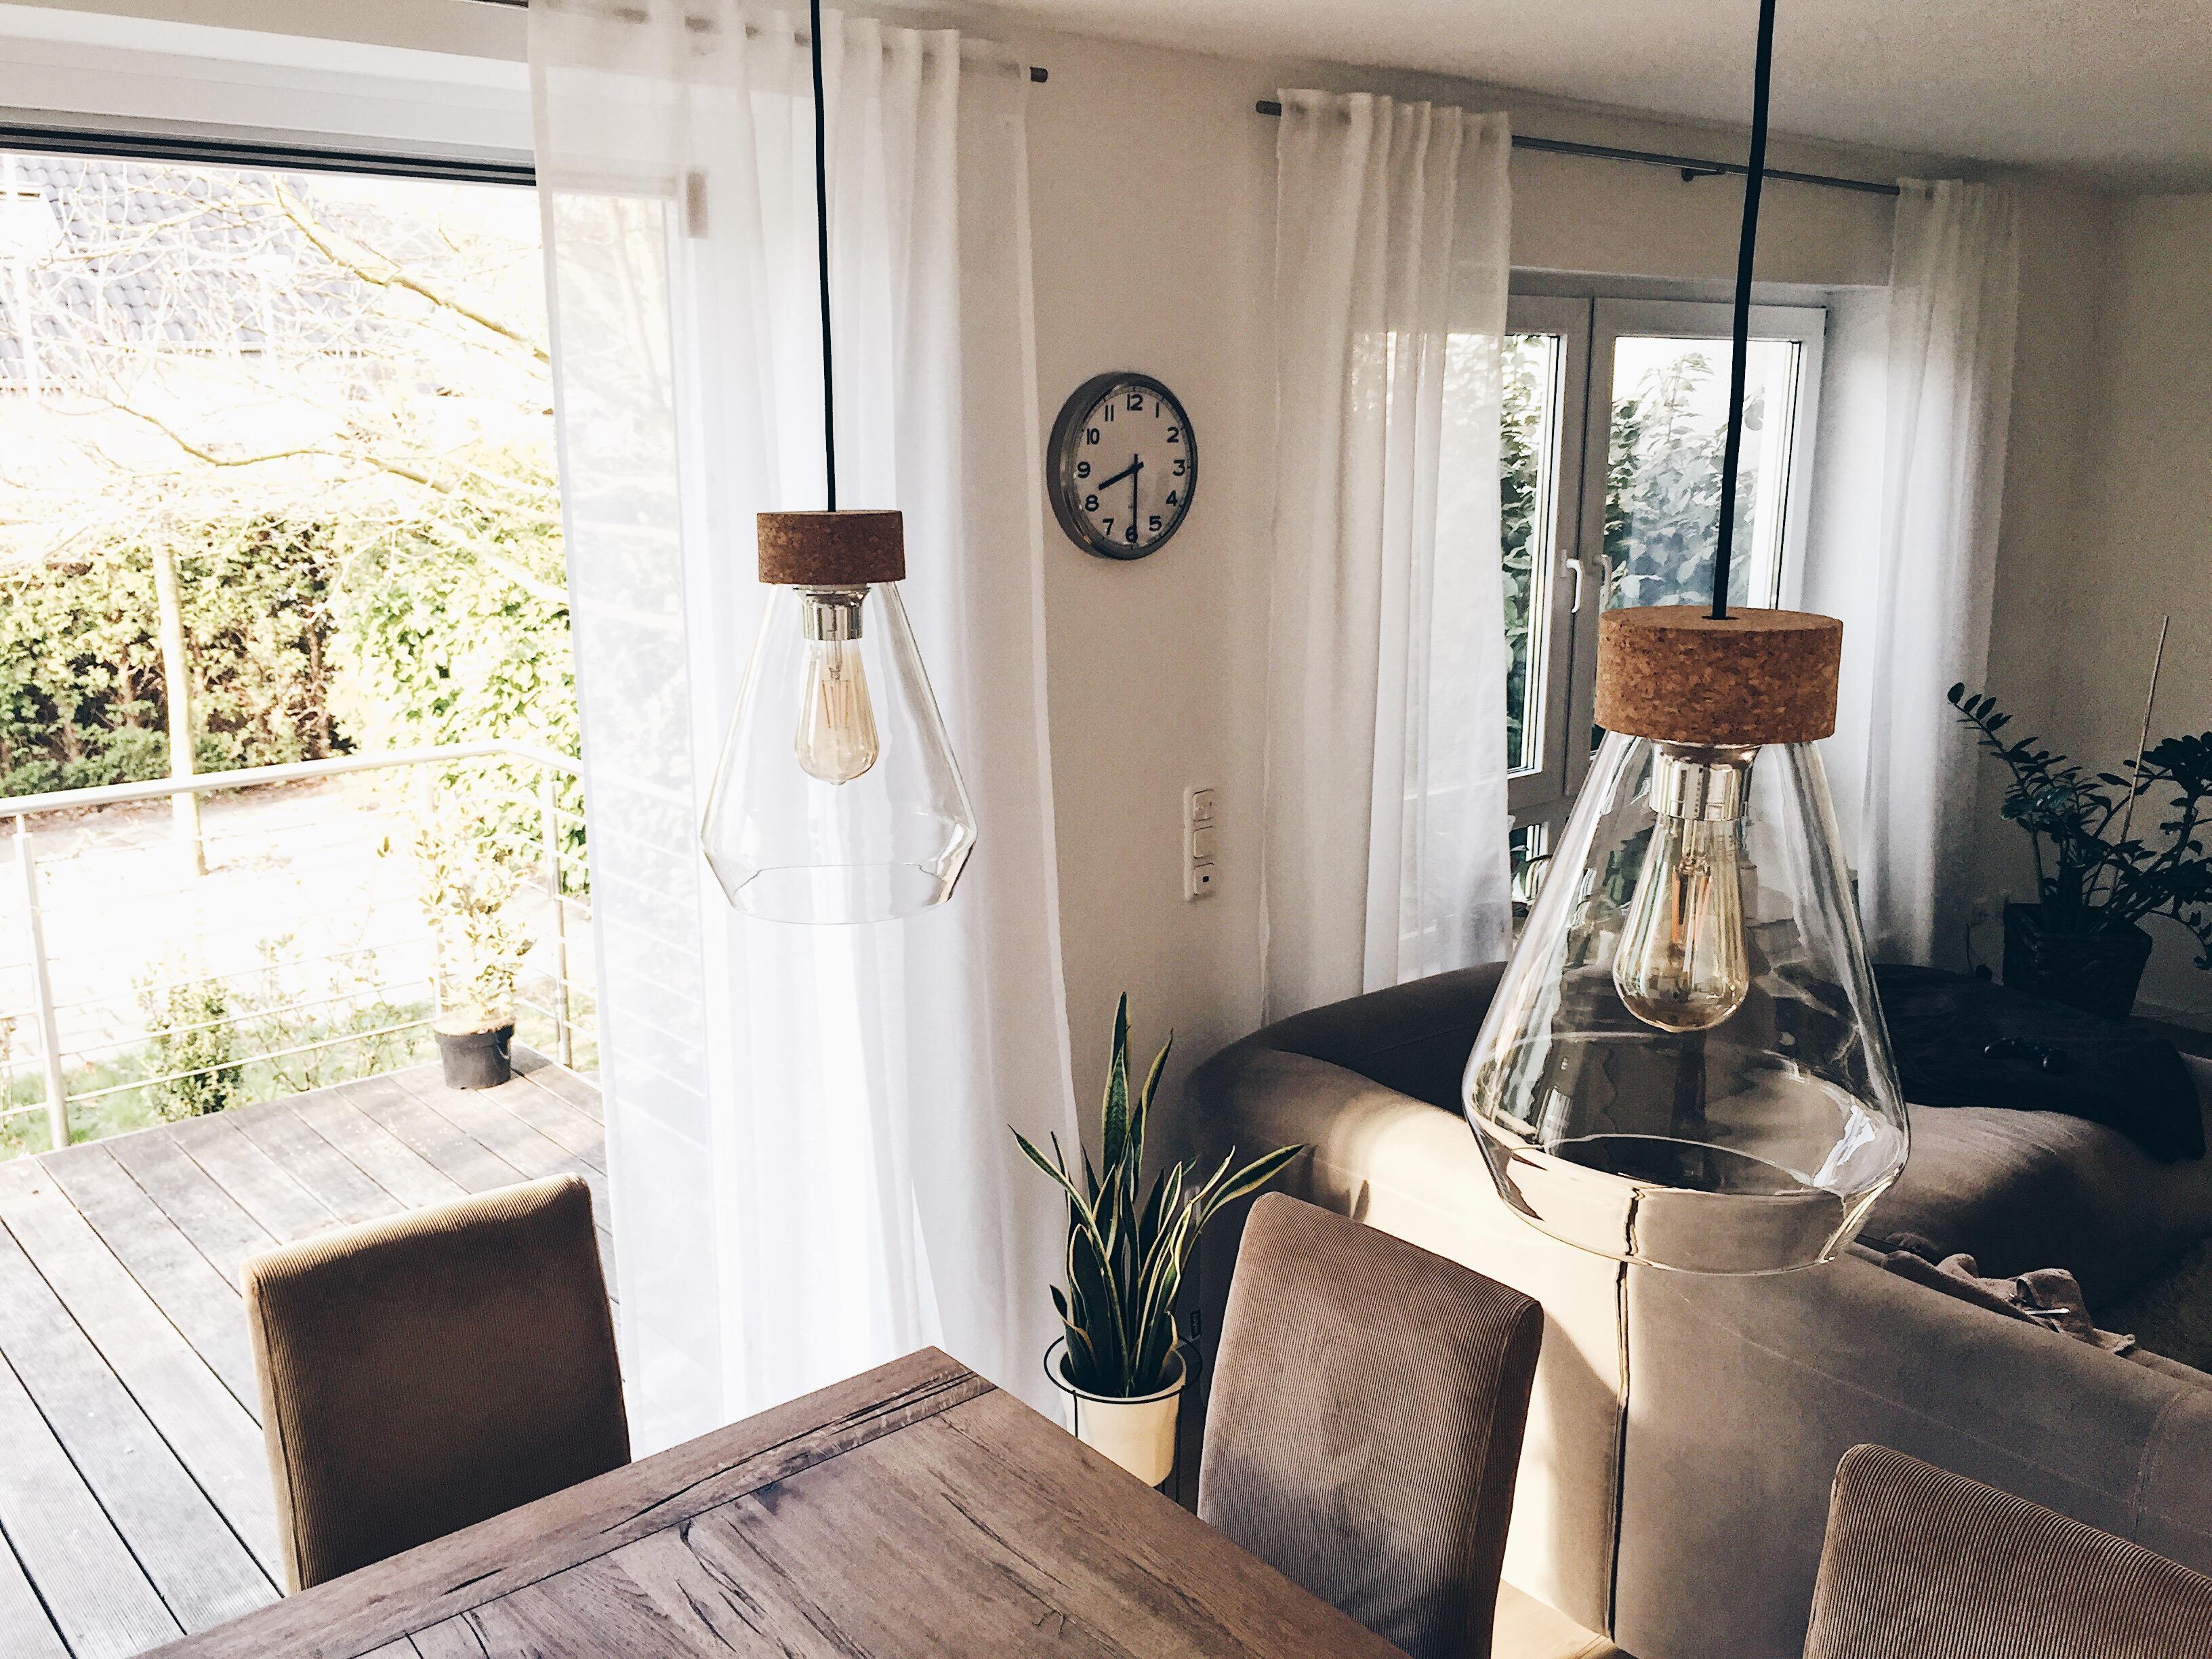 Besonders mag ich an unserem Wohnzimmer diese neuen #lampen 👍 #licht #eglo #glas #kork #home #esstisch